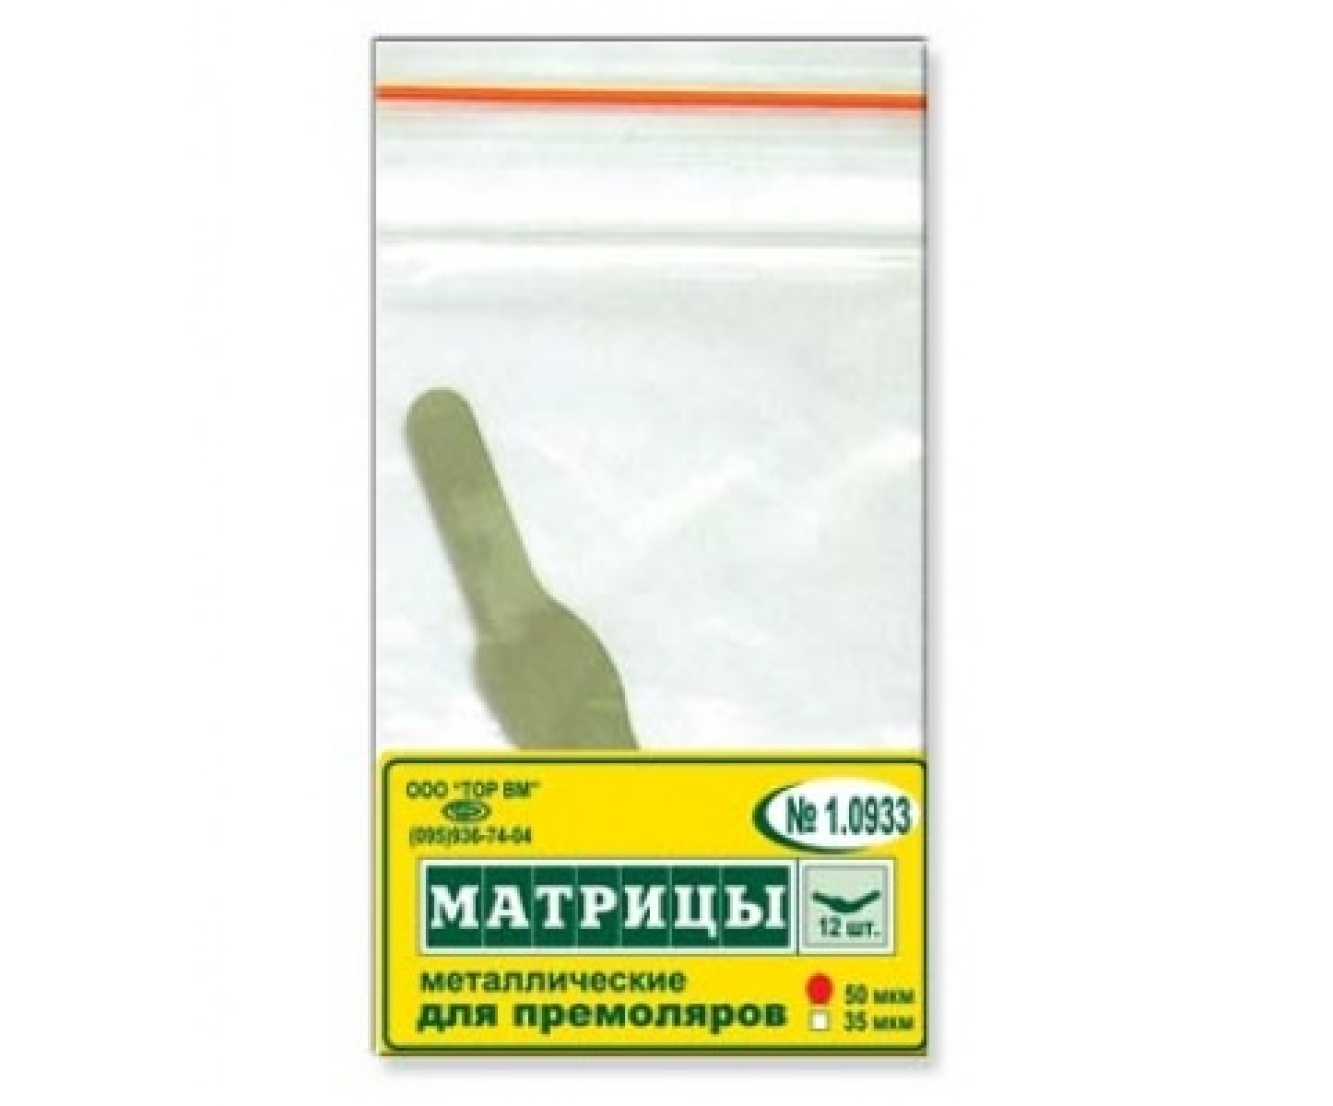 1.0933 Матрицы металлические, плоские, для премоляров (форма 3), ТОР ВМ (Россия)